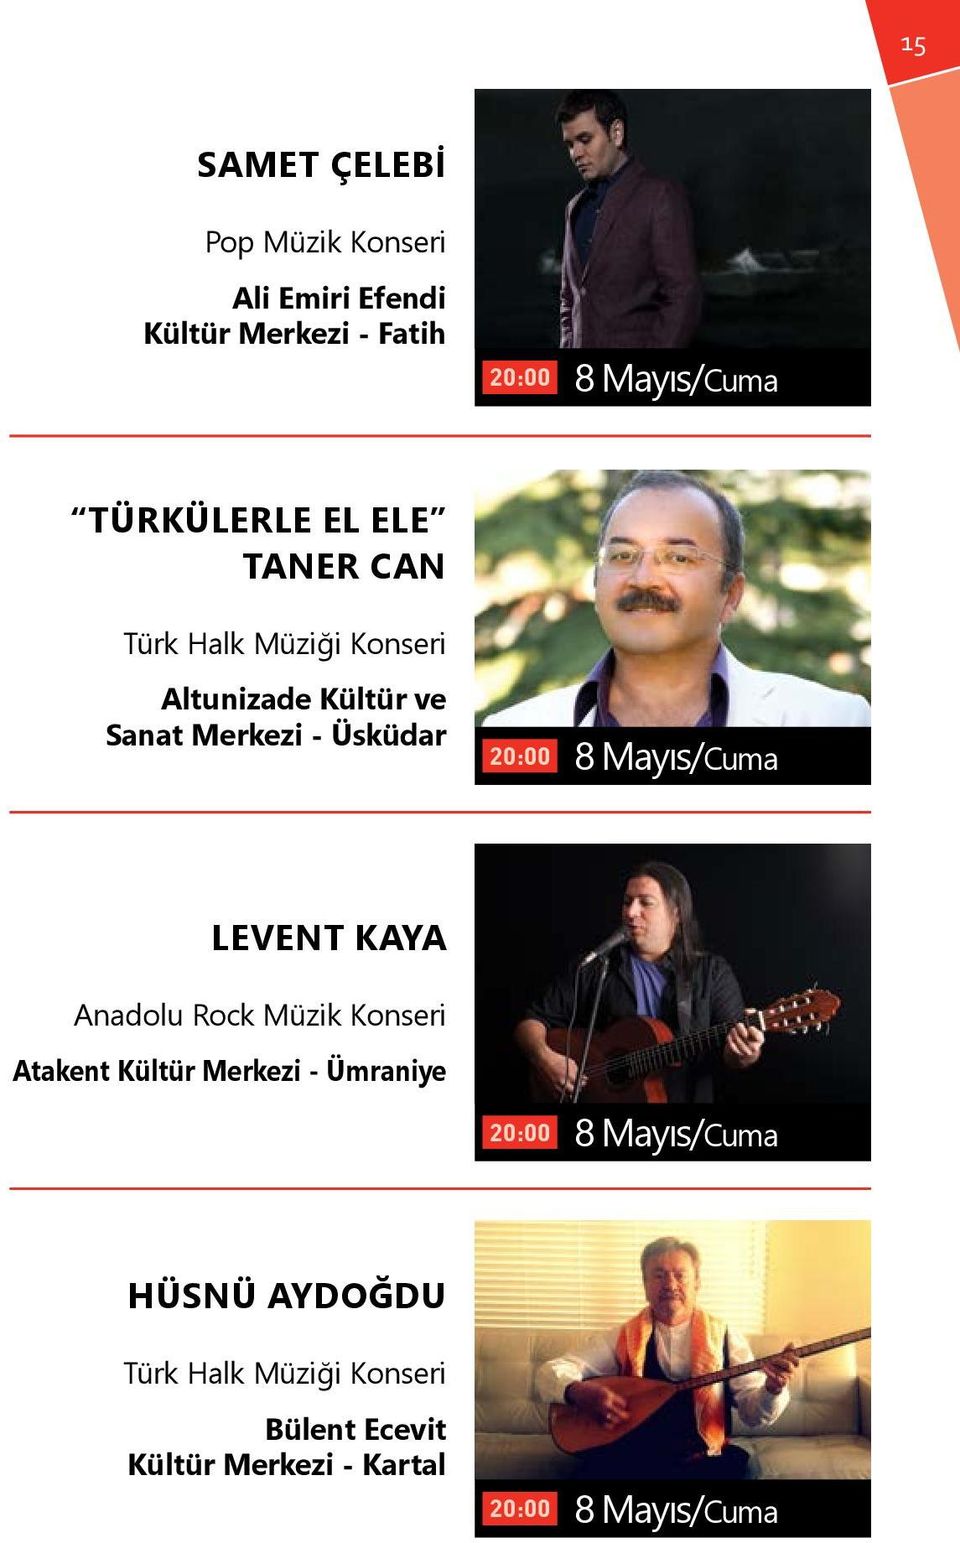 Üsküdar 8 Mayıs/Cuma LEVENT KAYA Anadolu Rock Müzik Konseri Atakent Kültür